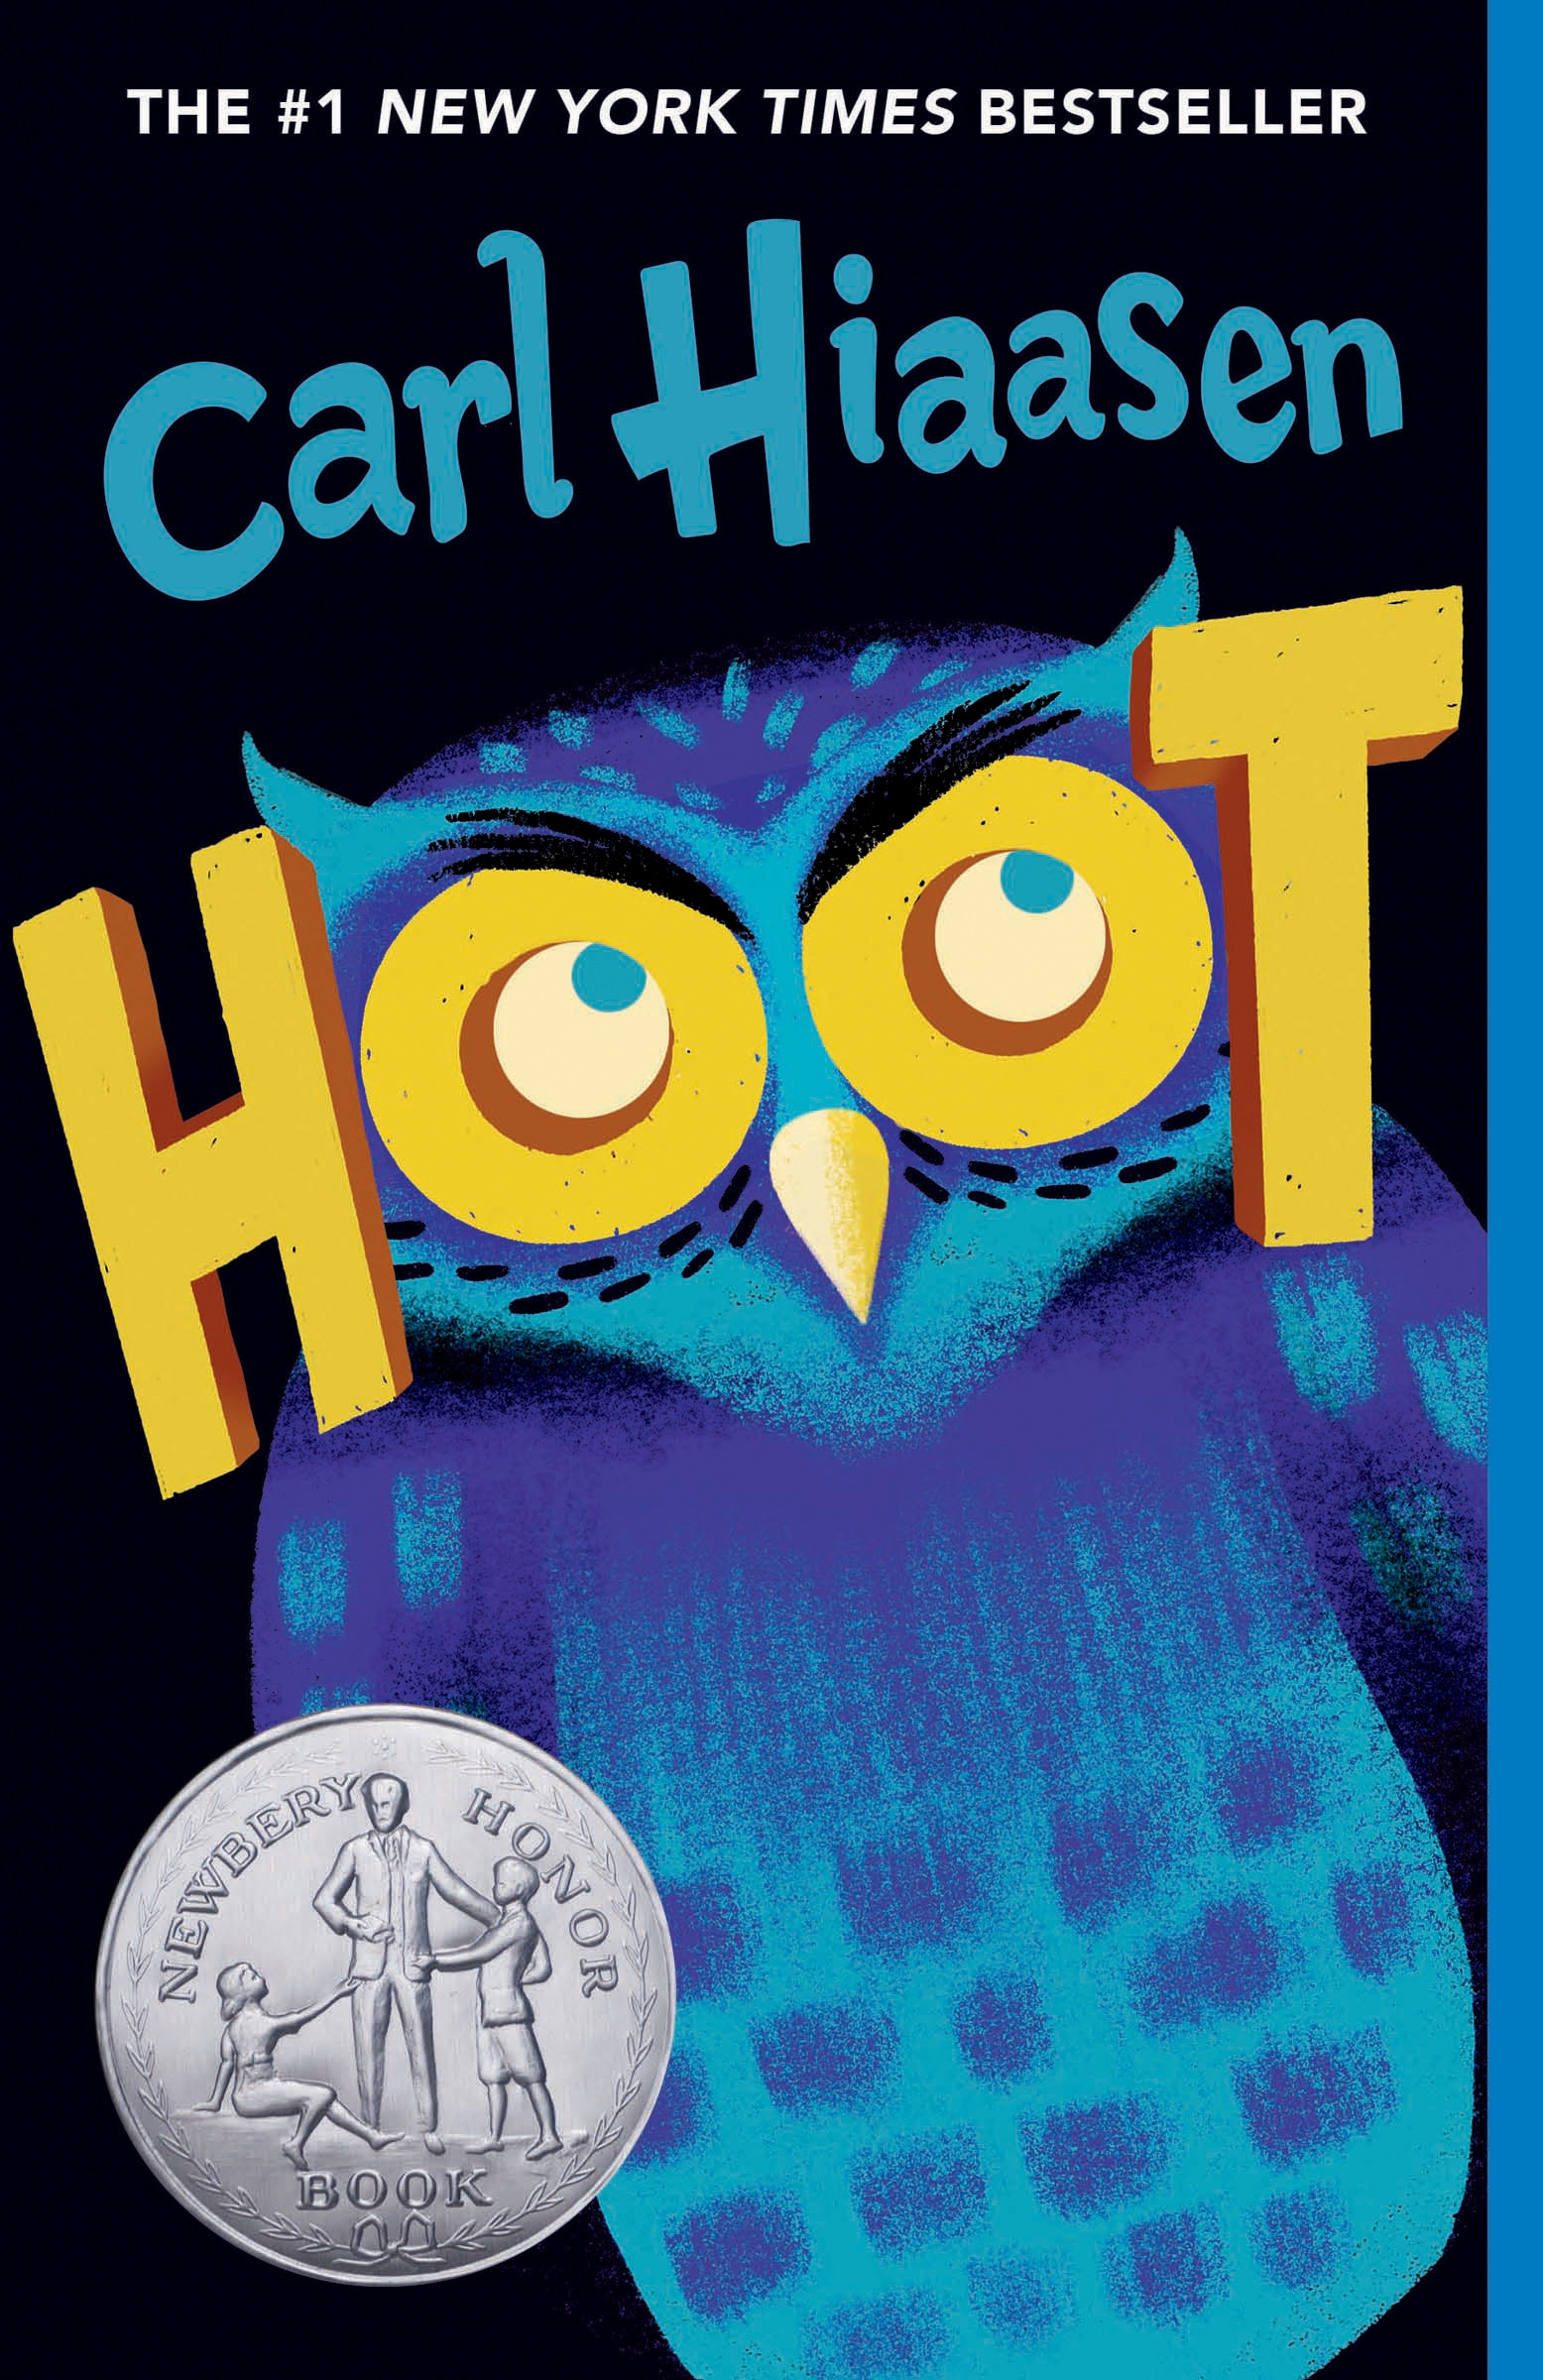 the book hoot by carl hiaasen